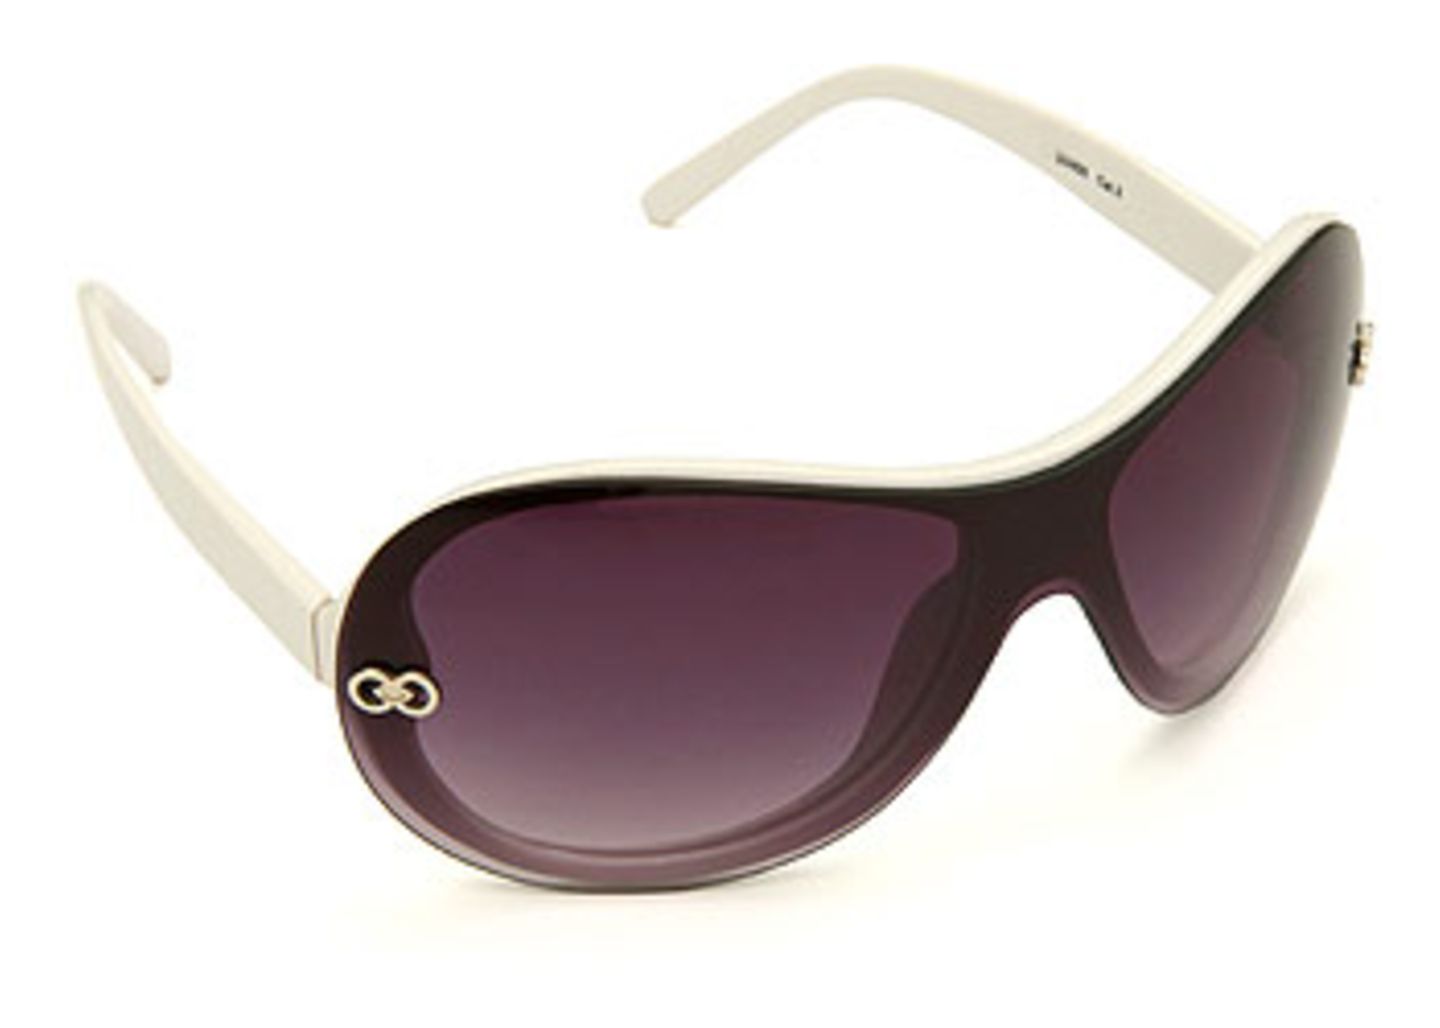 Brille mit weißer Kunststofffassung und grauen Gläsern; 7,95 Euro; von New Yorker